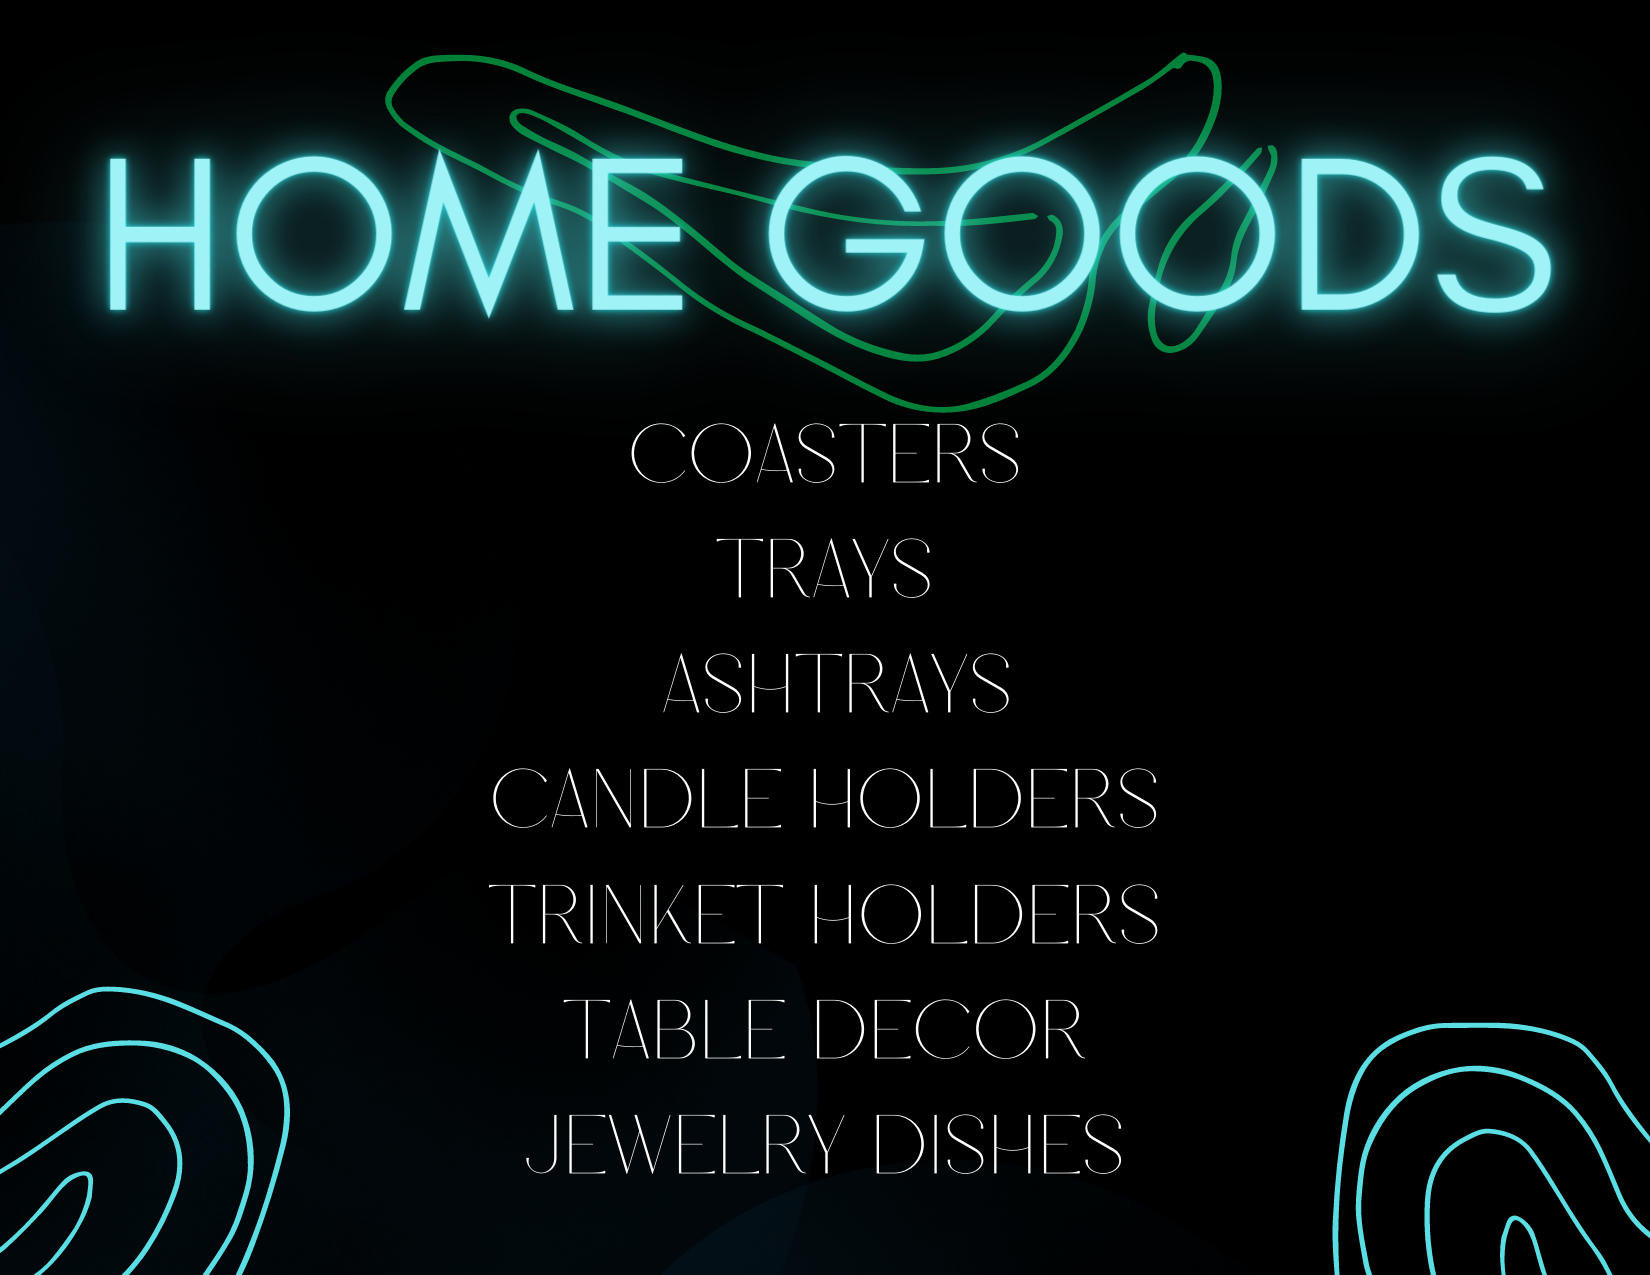 Home Goods List